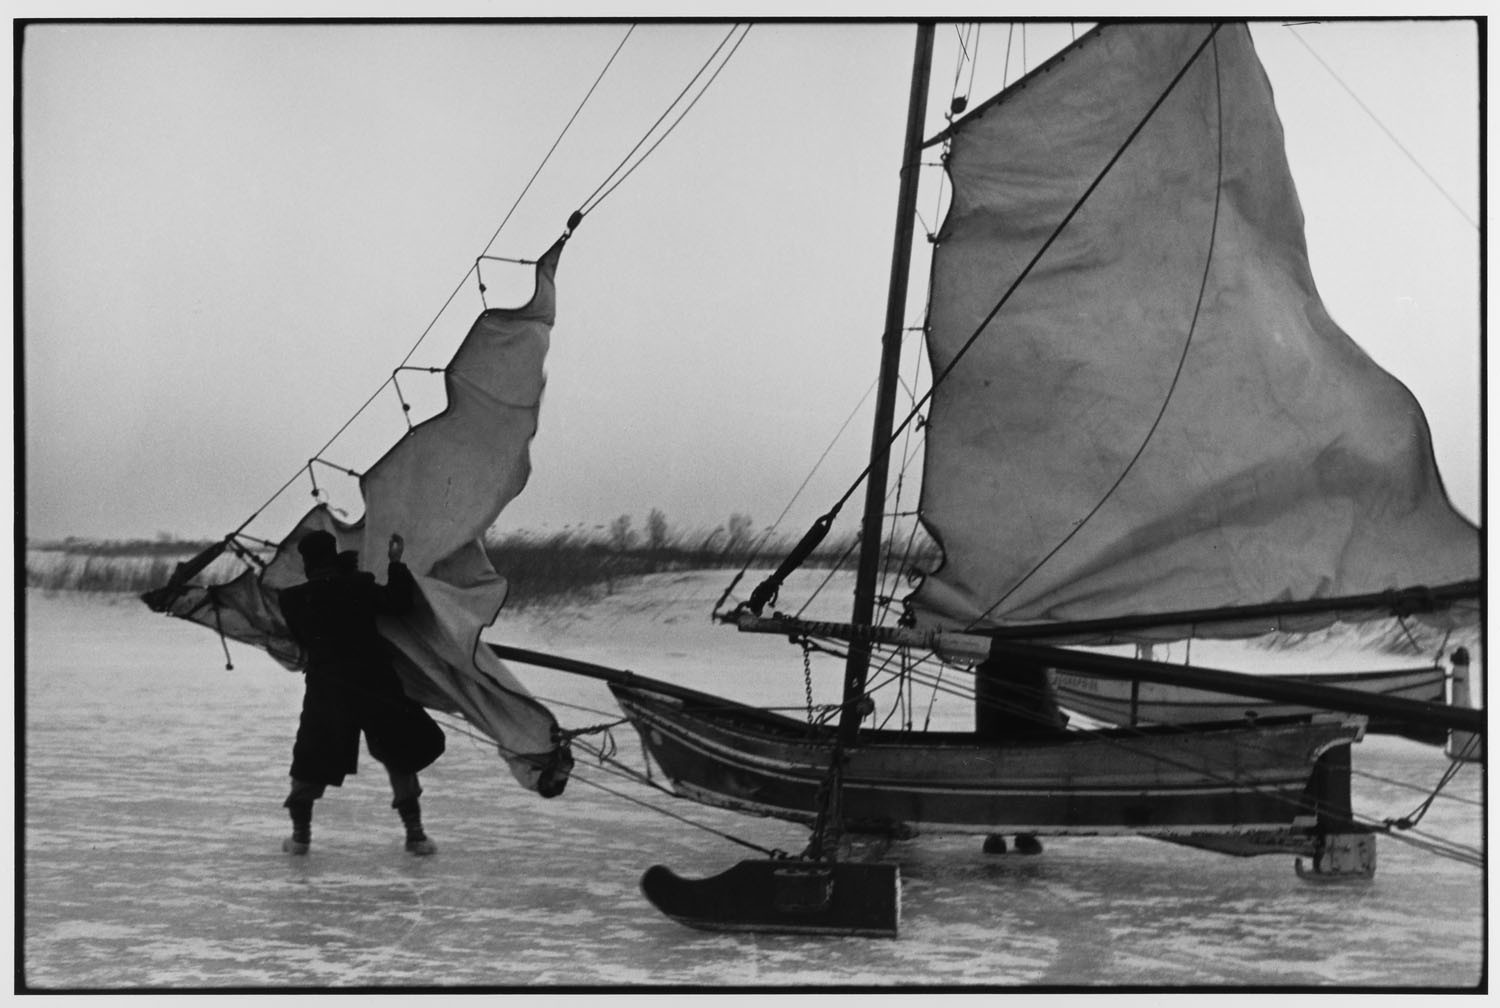 Монтаж парусов ледового катера, Голландия, 1964. Фотограф Леонард Фрид